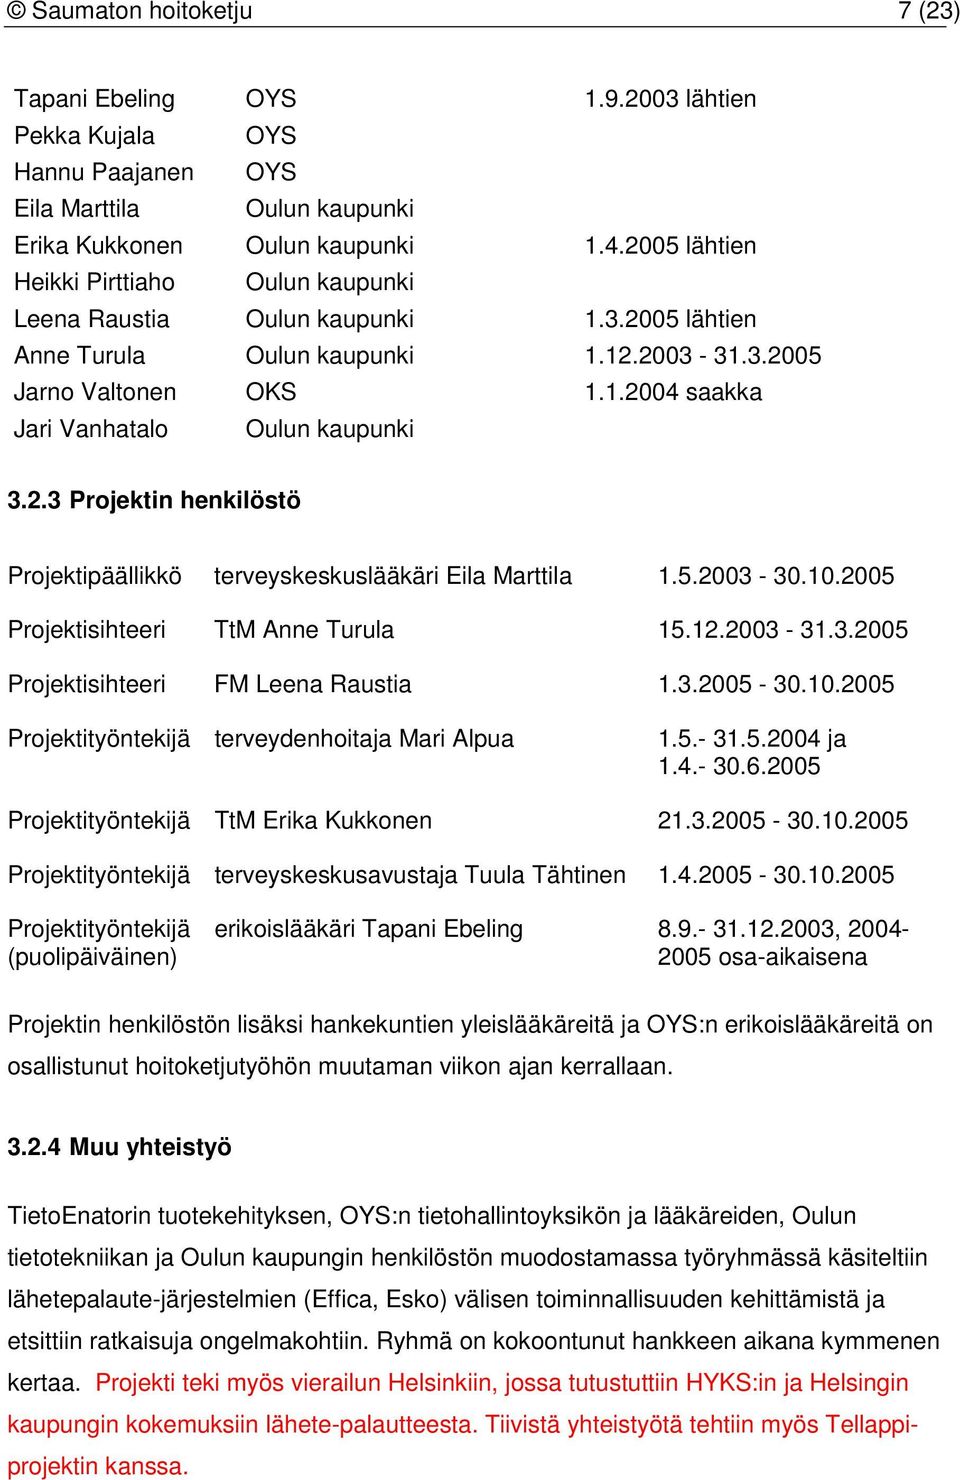 2.3 Projektin henkilöstö Projektipäällikkö terveyskeskuslääkäri Eila Marttila 1.5.2003-30.10.2005 Projektisihteeri TtM Anne Turula 15.12.2003-31.3.2005 Projektisihteeri FM Leena Raustia 1.3.2005-30.